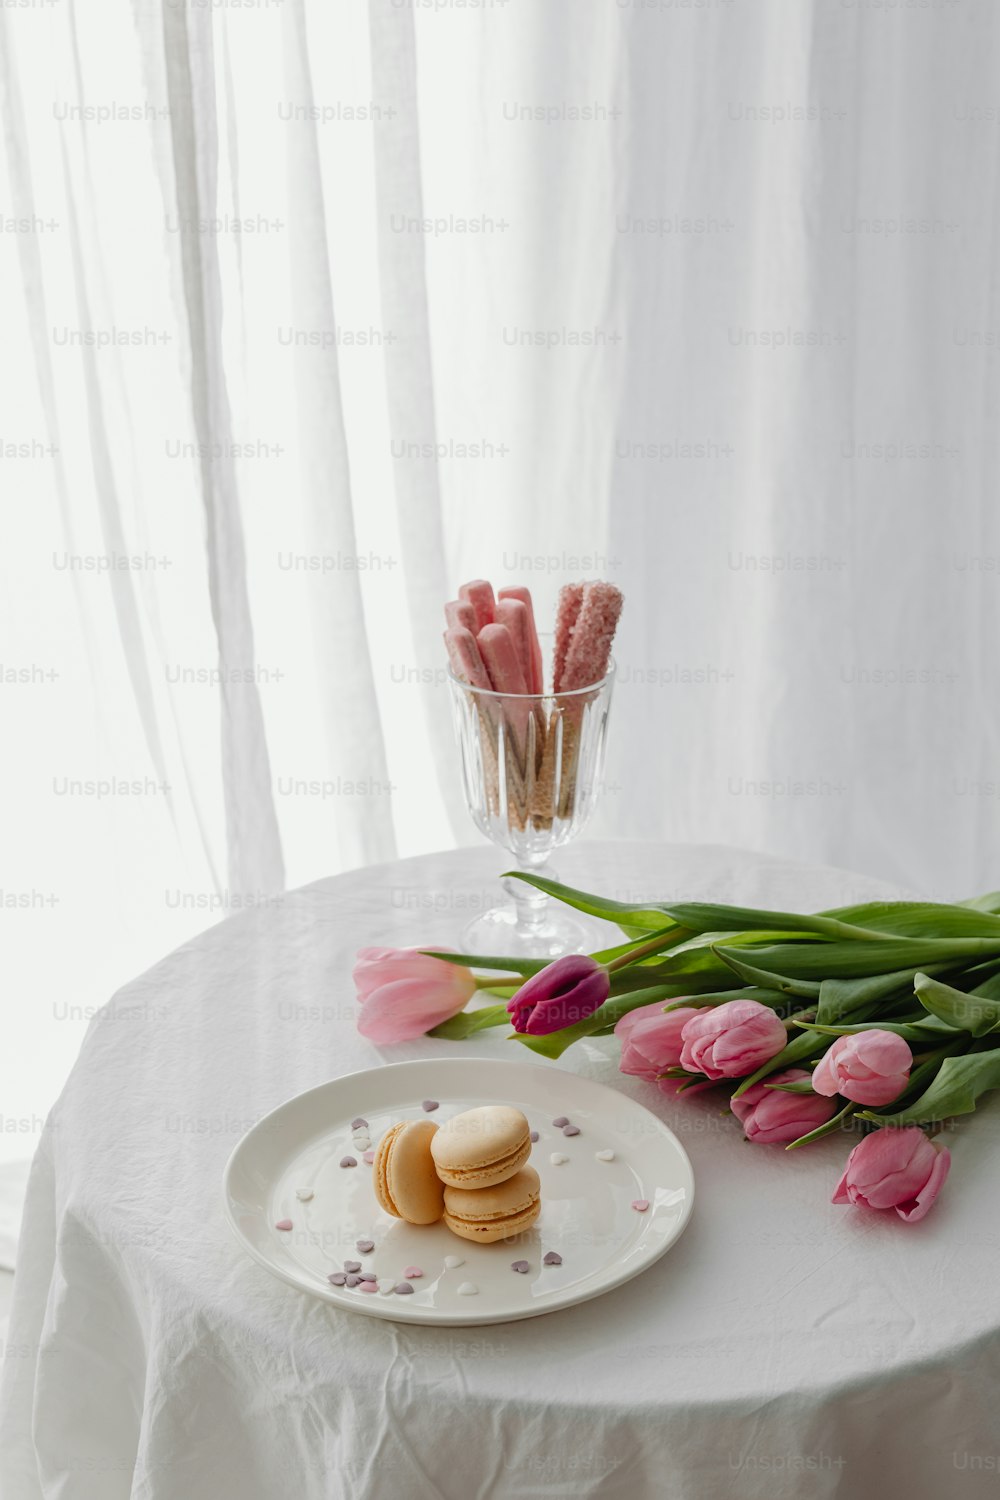 Un plato de galletas y tulipanes rosados sobre una mesa